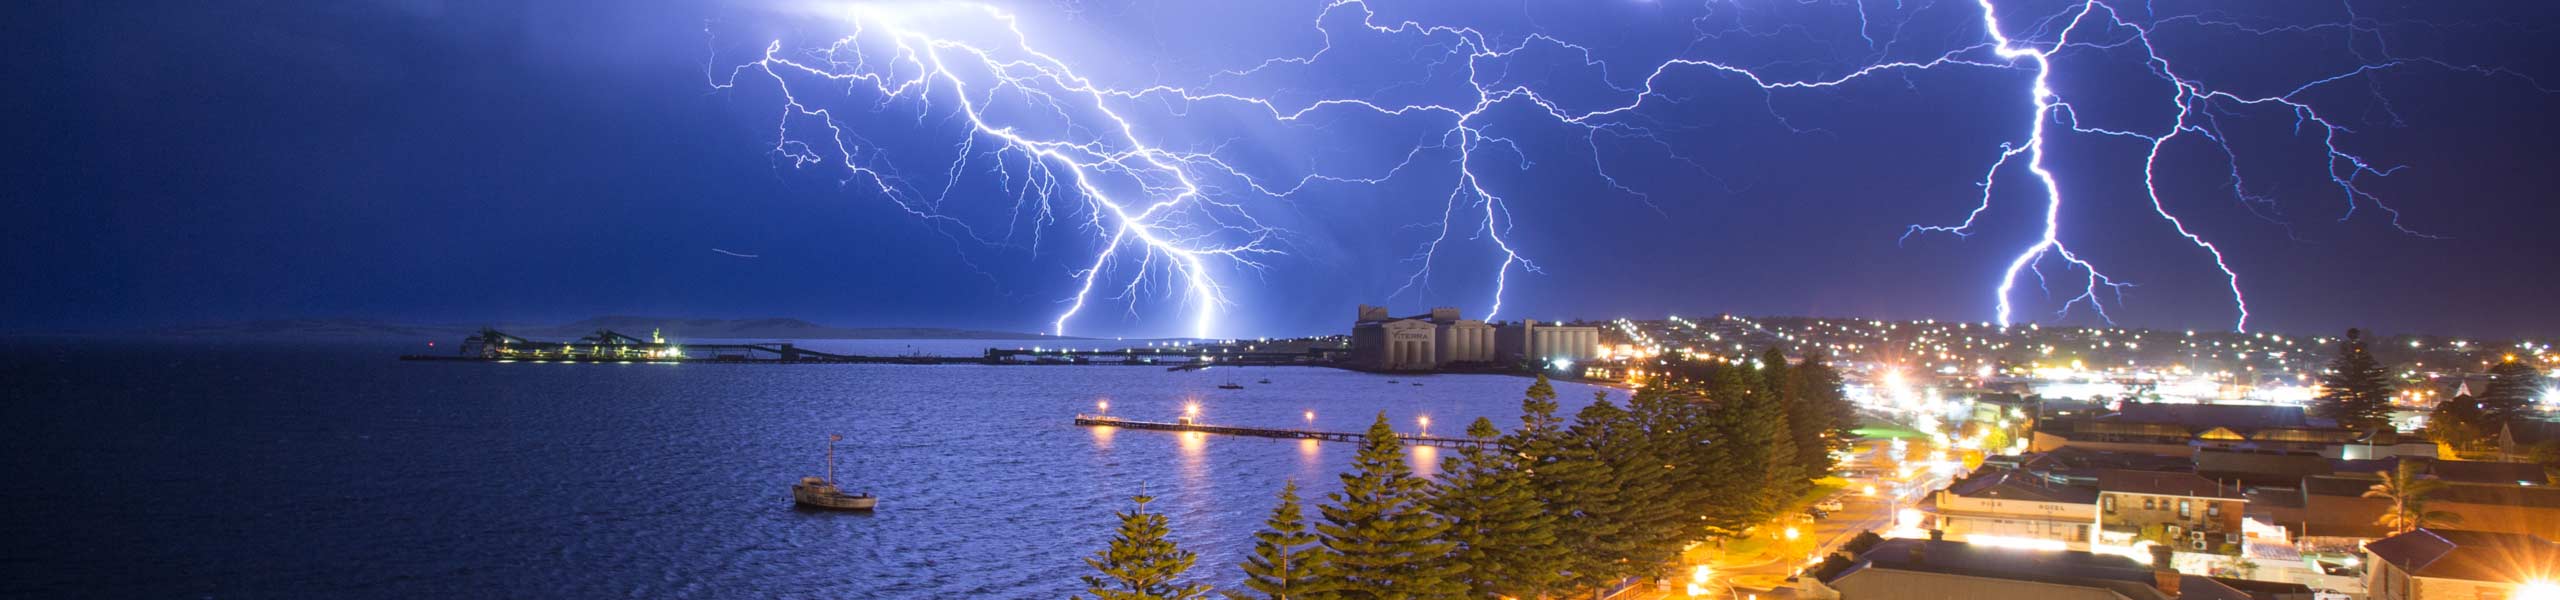 lightningstorm图片